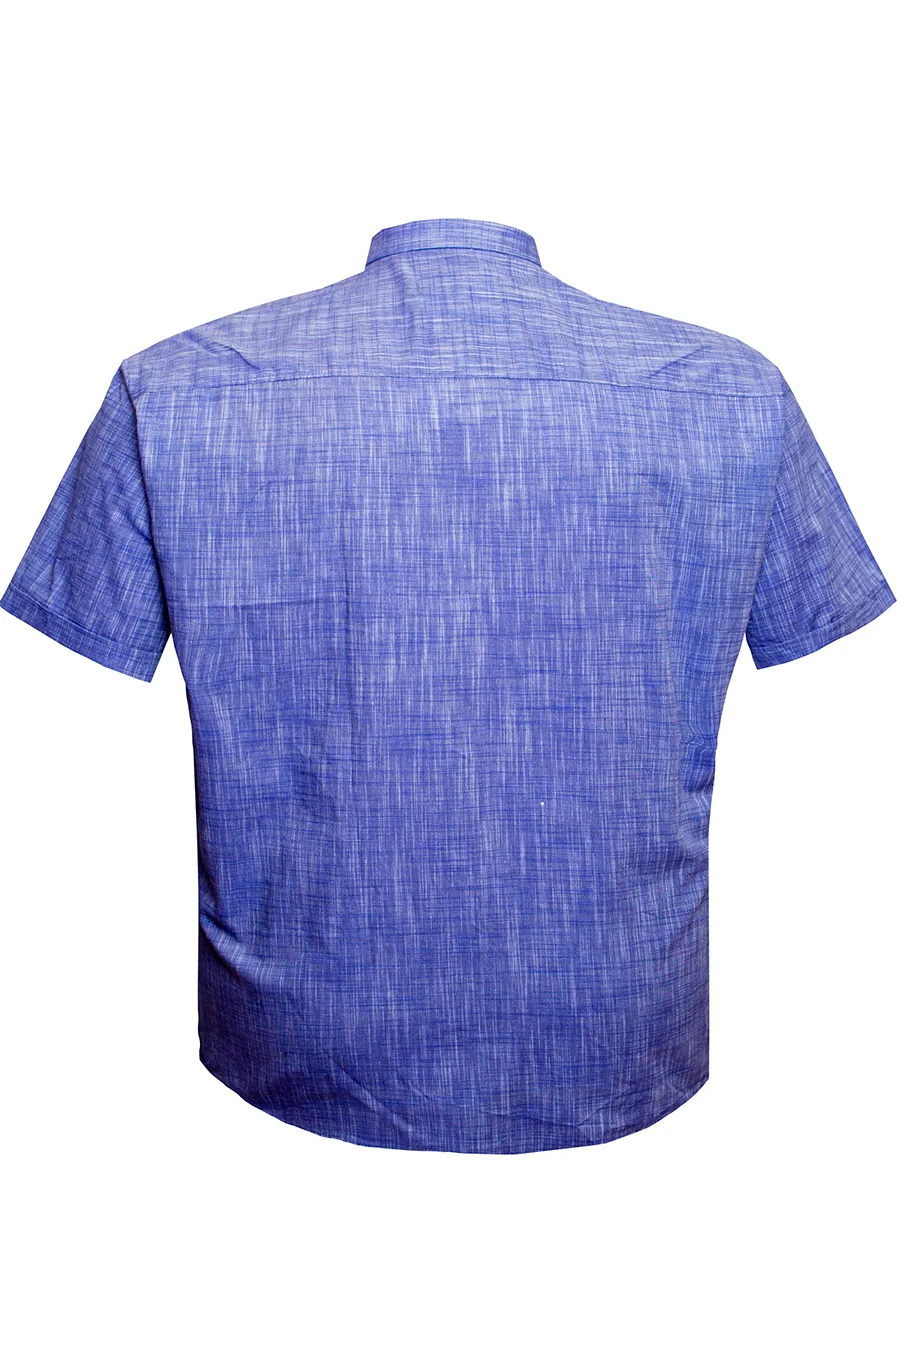 Рубашка синяя из льна большого размера